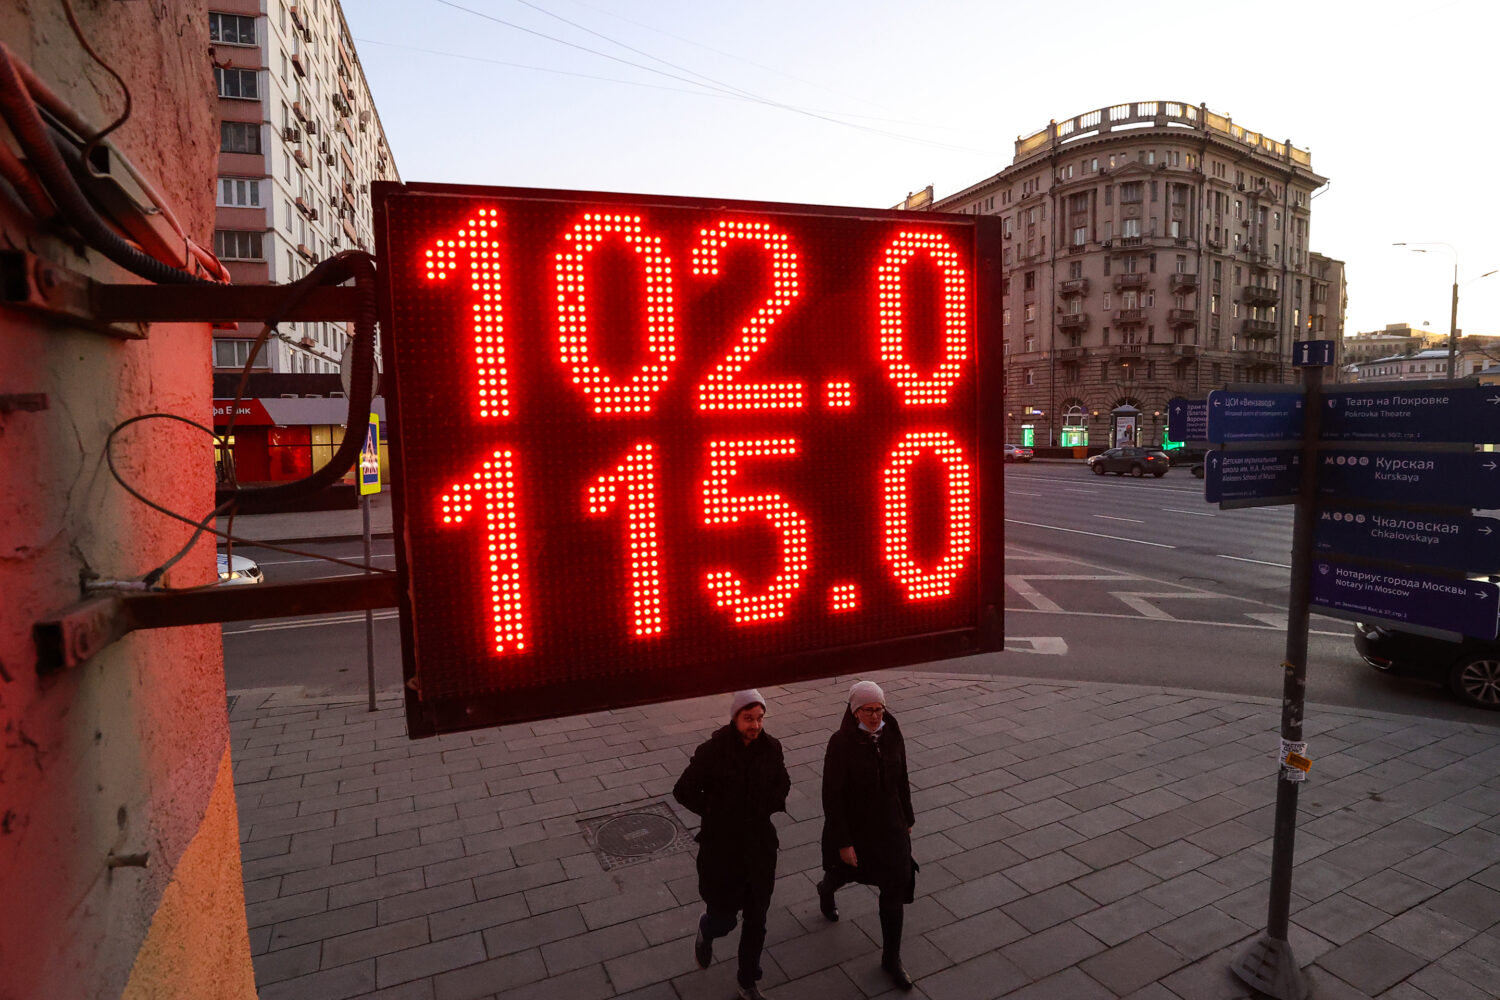 "Σε ένα μήνα η Ρωσία θα έχει χρεοκοπήσει", λέει η Morgan Stanley